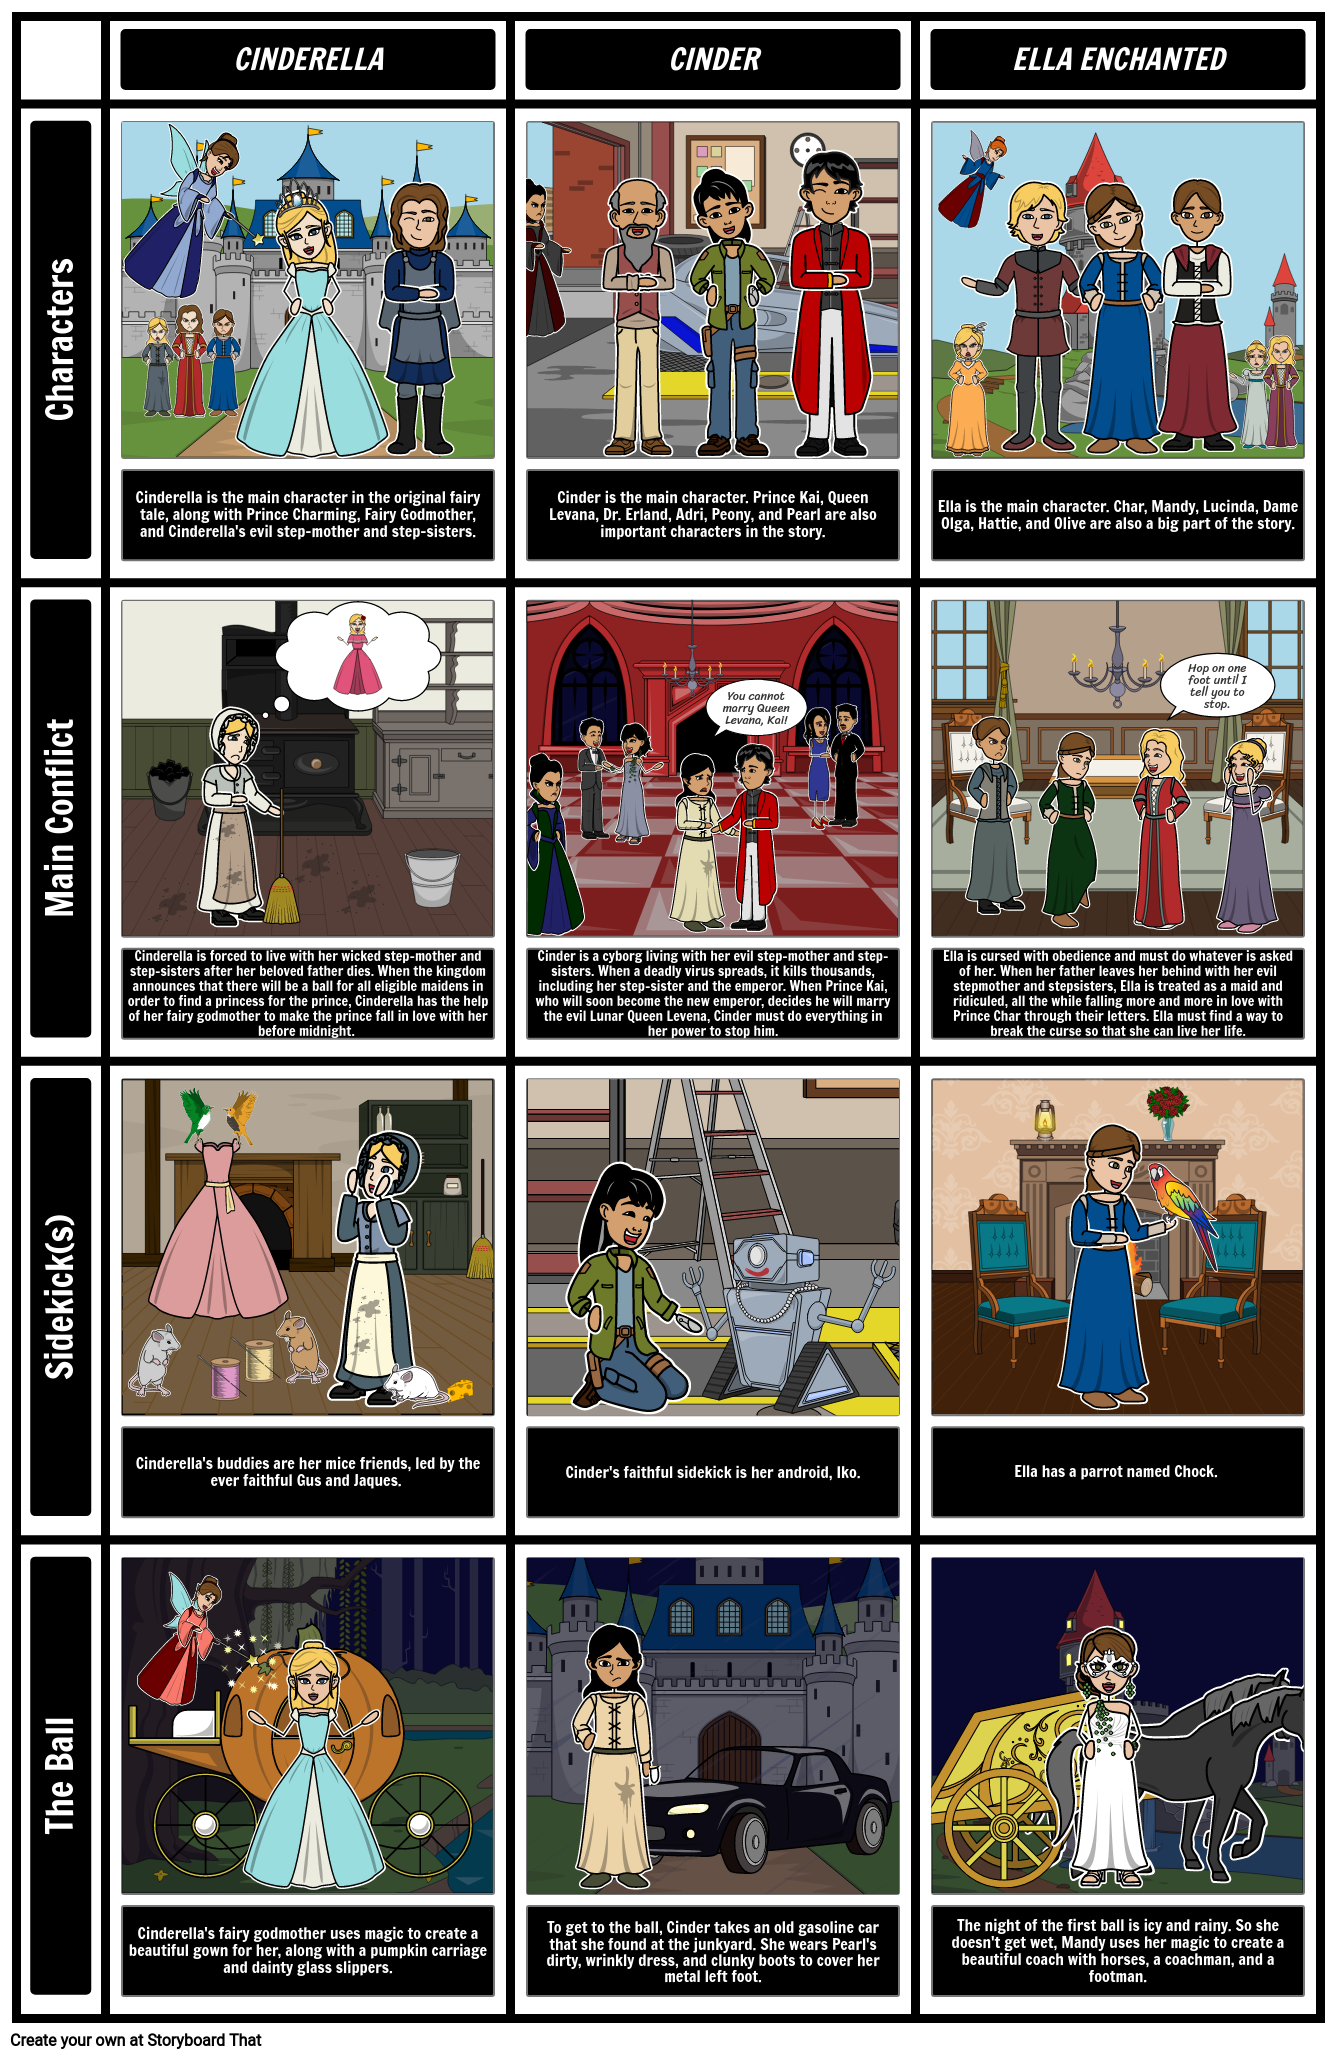 Srovnání Cinder a Elly Enchanted Storyboard por cs-examples